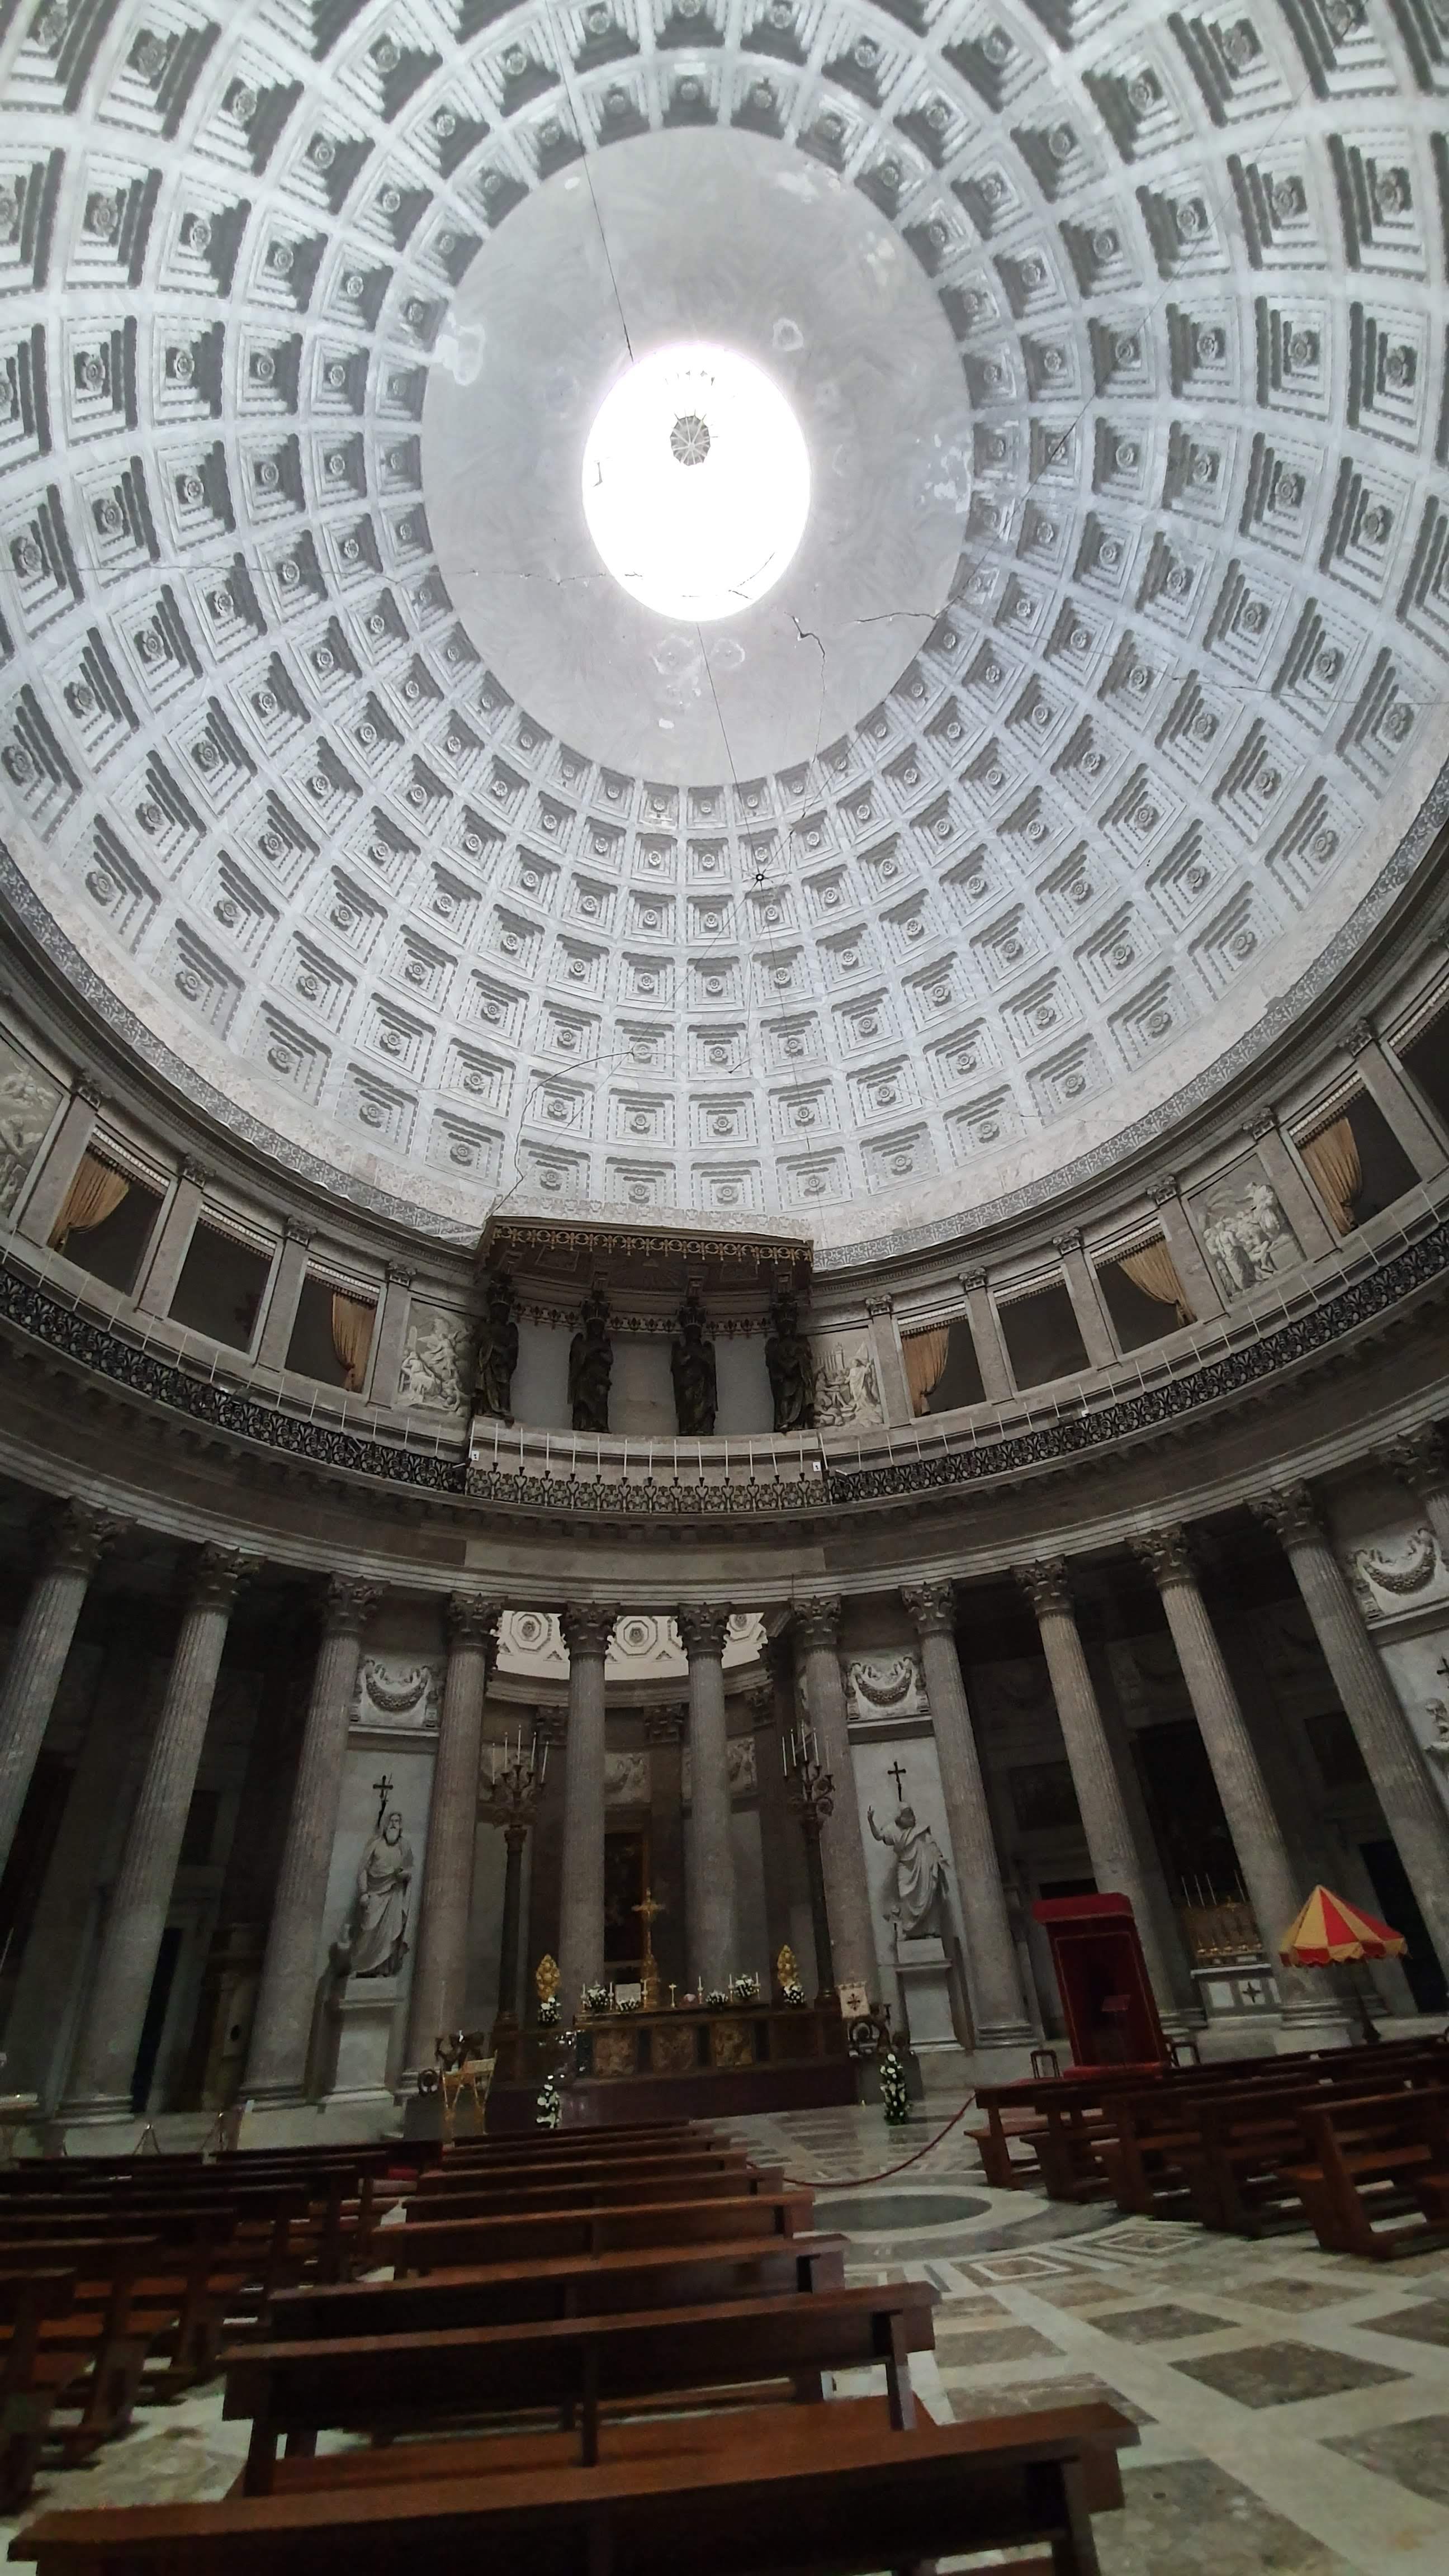 Belsejében is igyekeztek a római Pantheont utánozni. Körben szobrok díszítik. Figyelemre méltó a főoltár, amely barokk stílusú, lapis lazulival és jáspisokkal van díszítve.